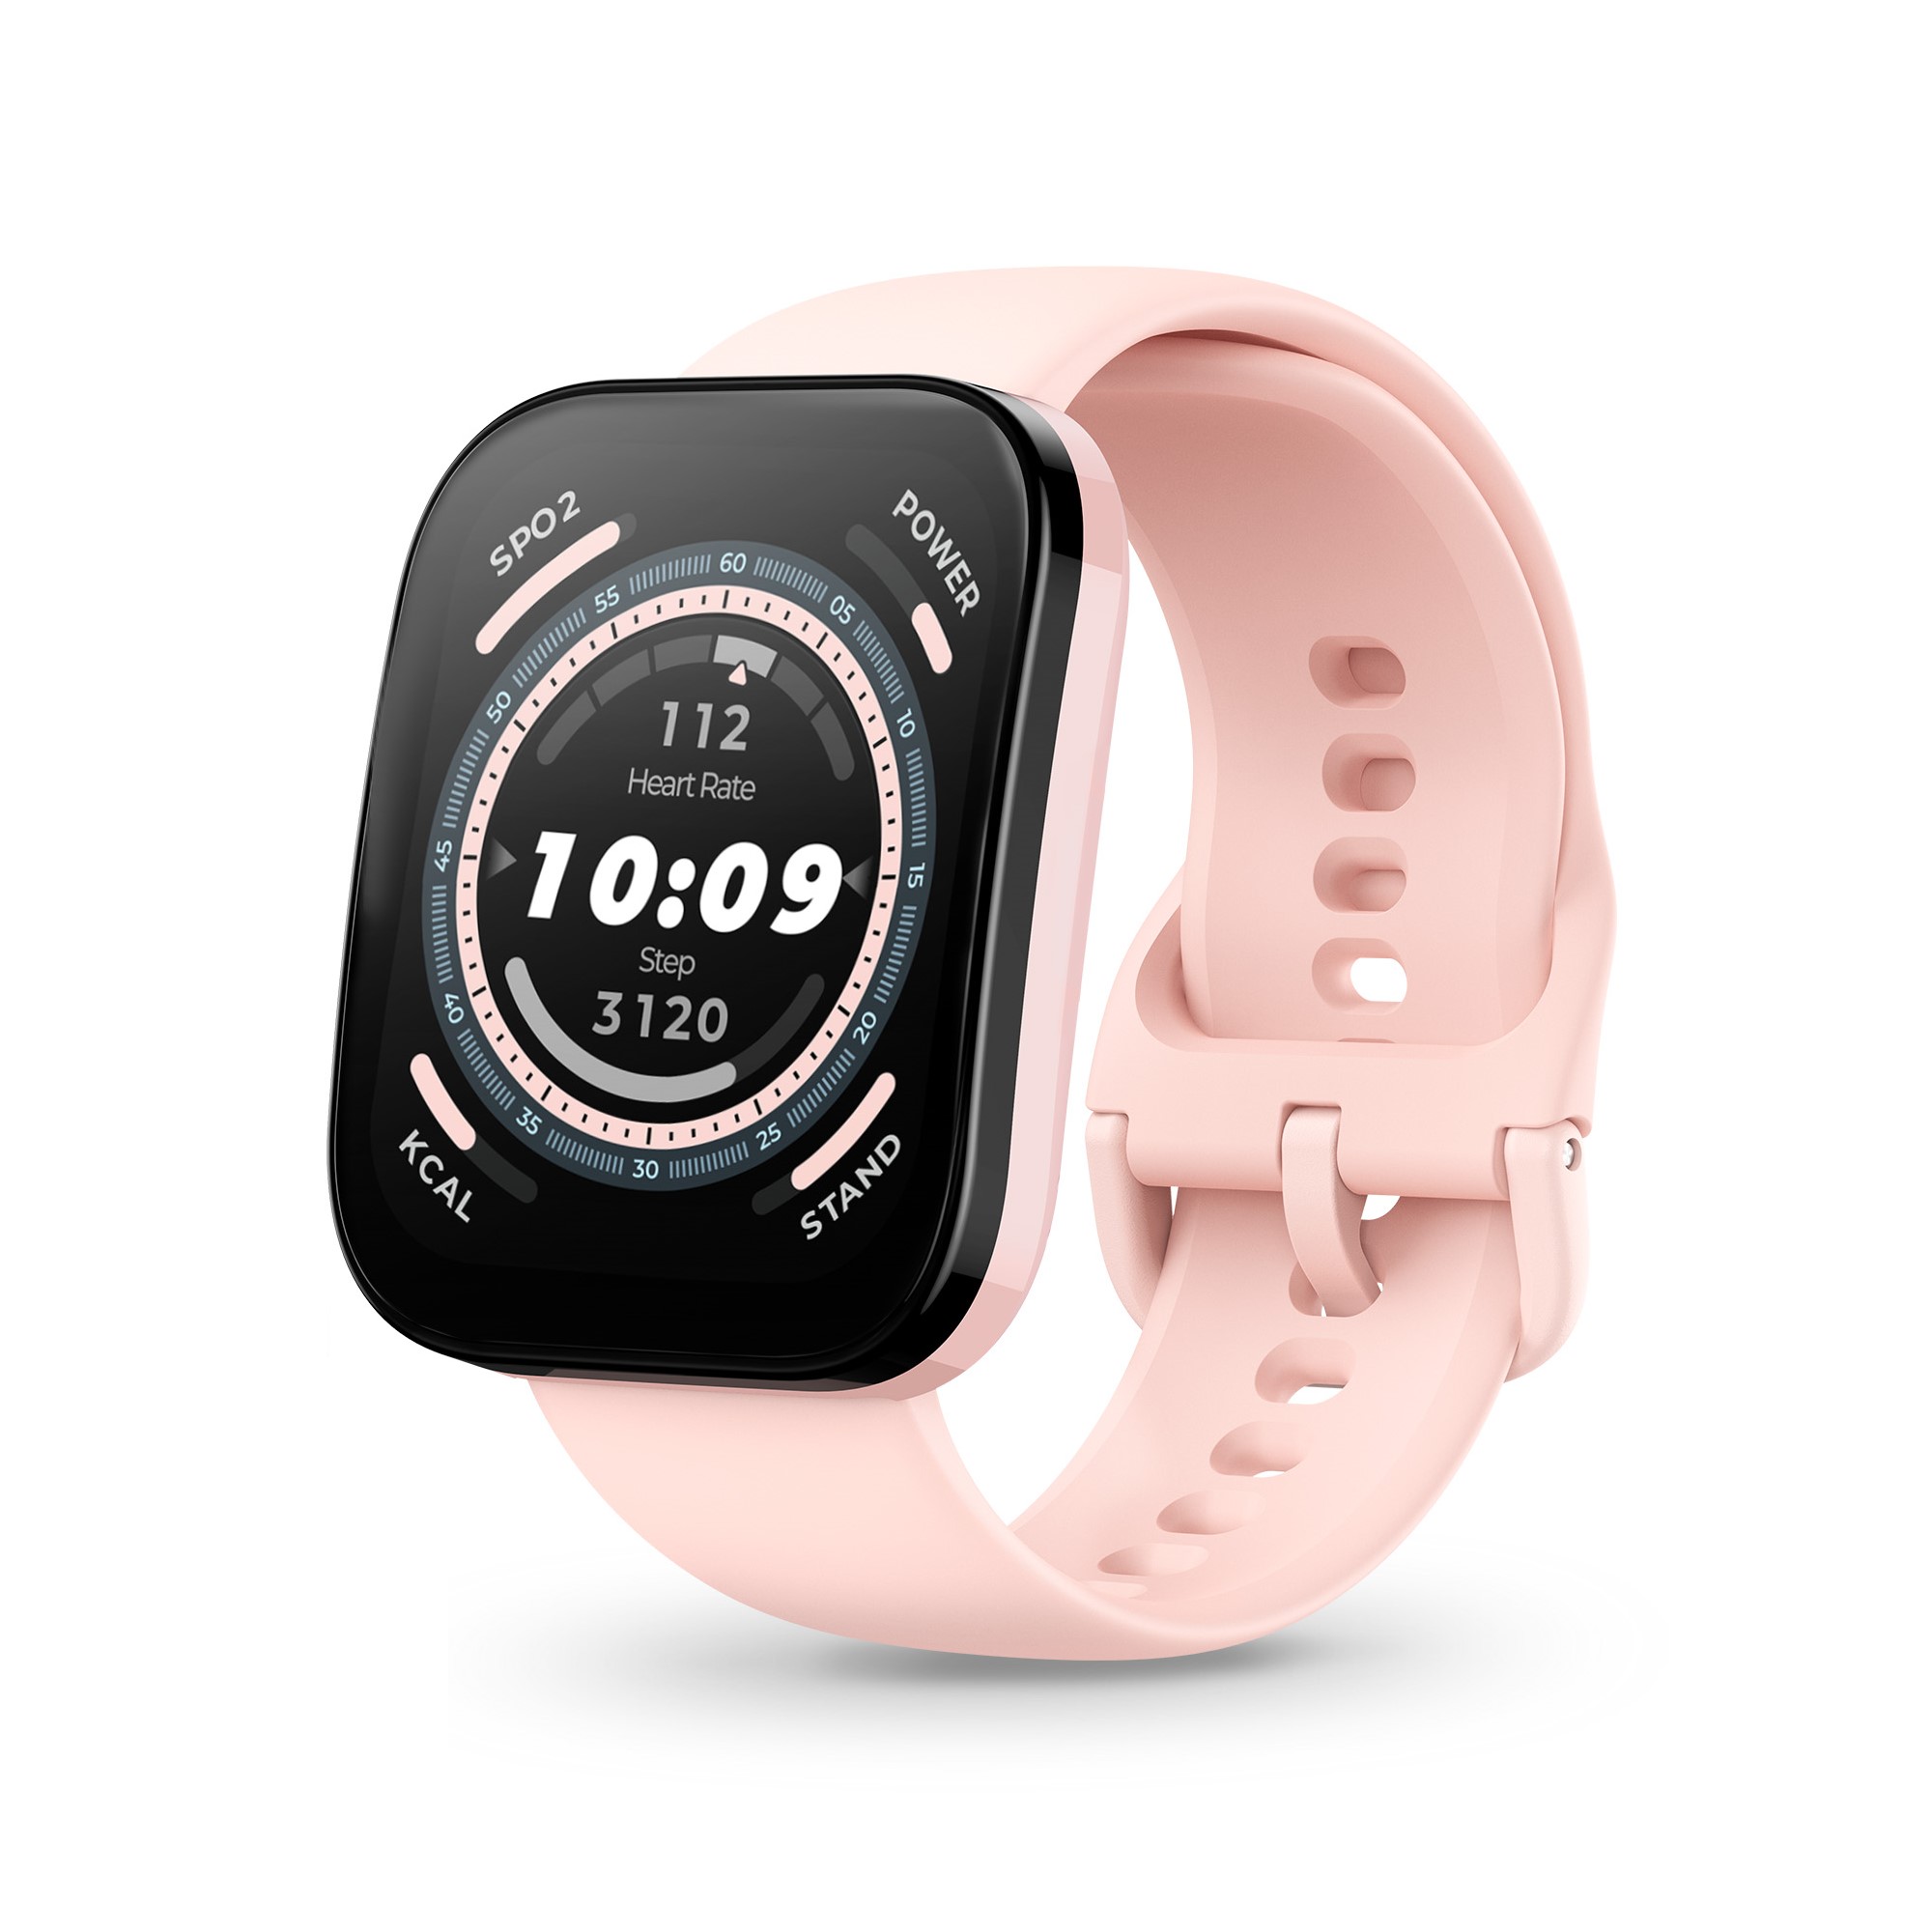 Nuevo Amazfit Bip 3: características y precio del smartwatch con